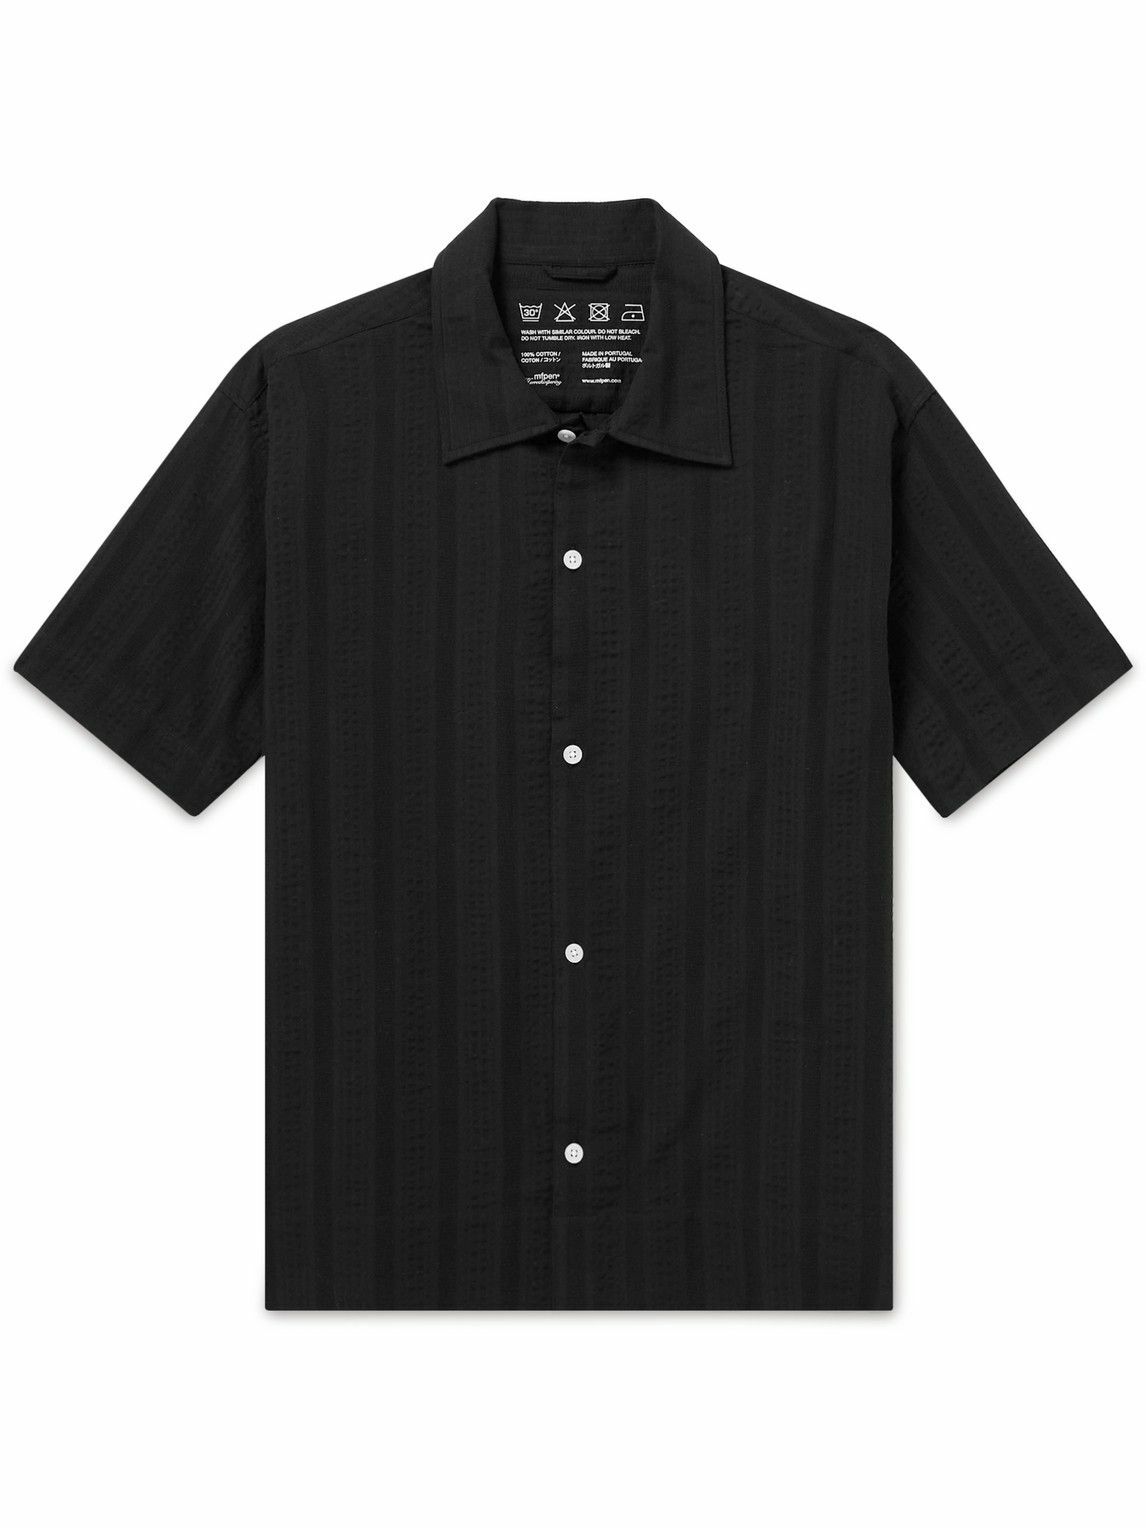 mfpen - Holiday Striped Cotton-Seersucker Shirt - Black mfpen